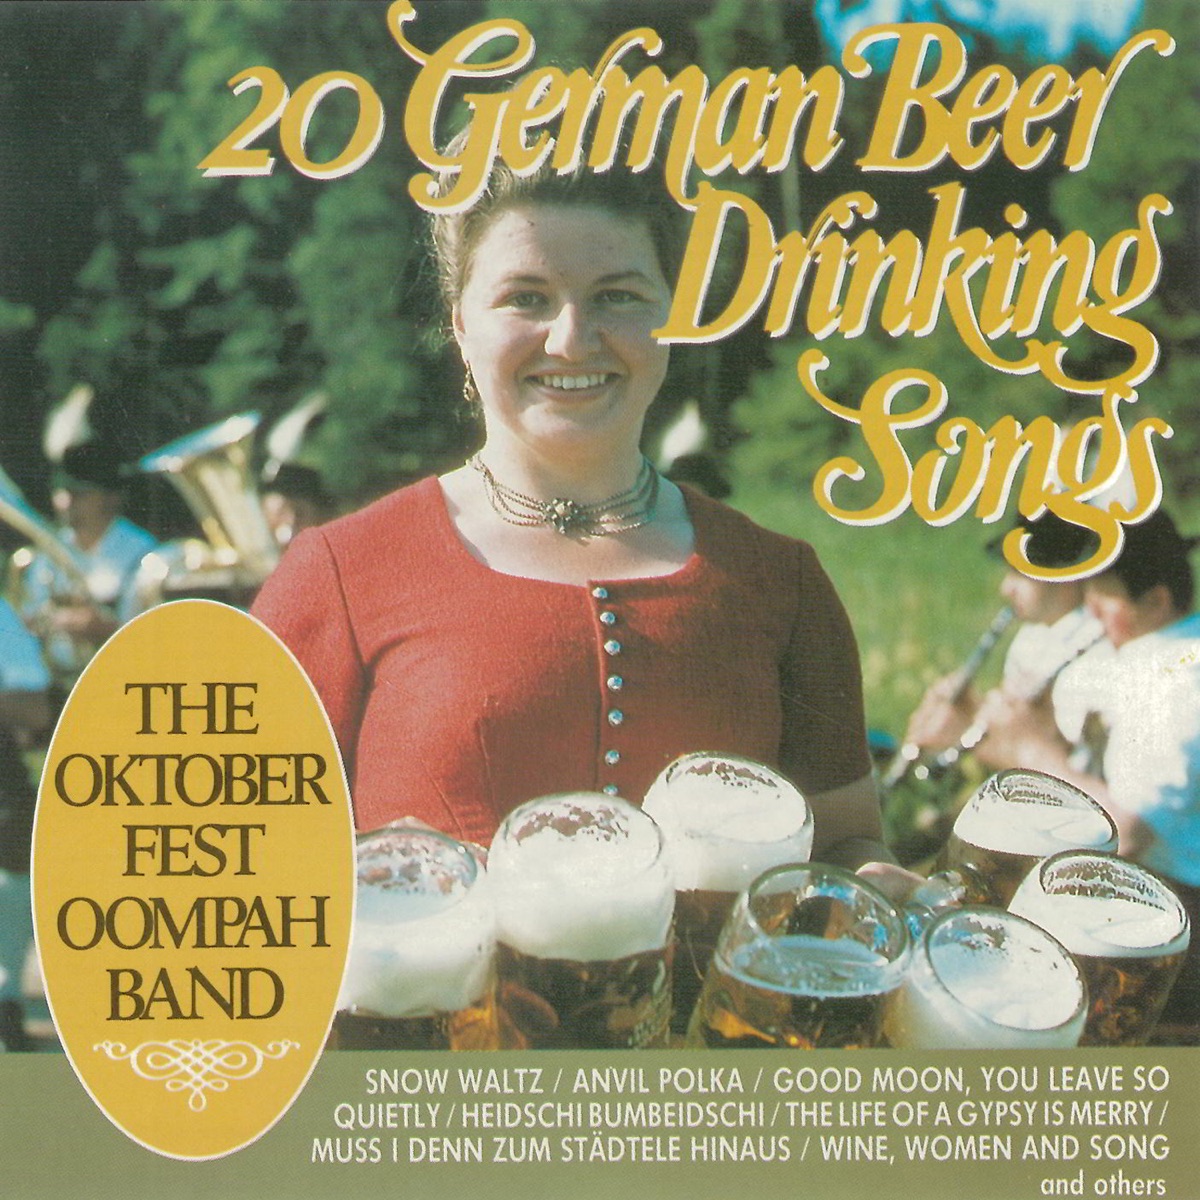 20 German Beer Drinking Songs - Album by The Oktoberfest Oompah Band -  Apple Music